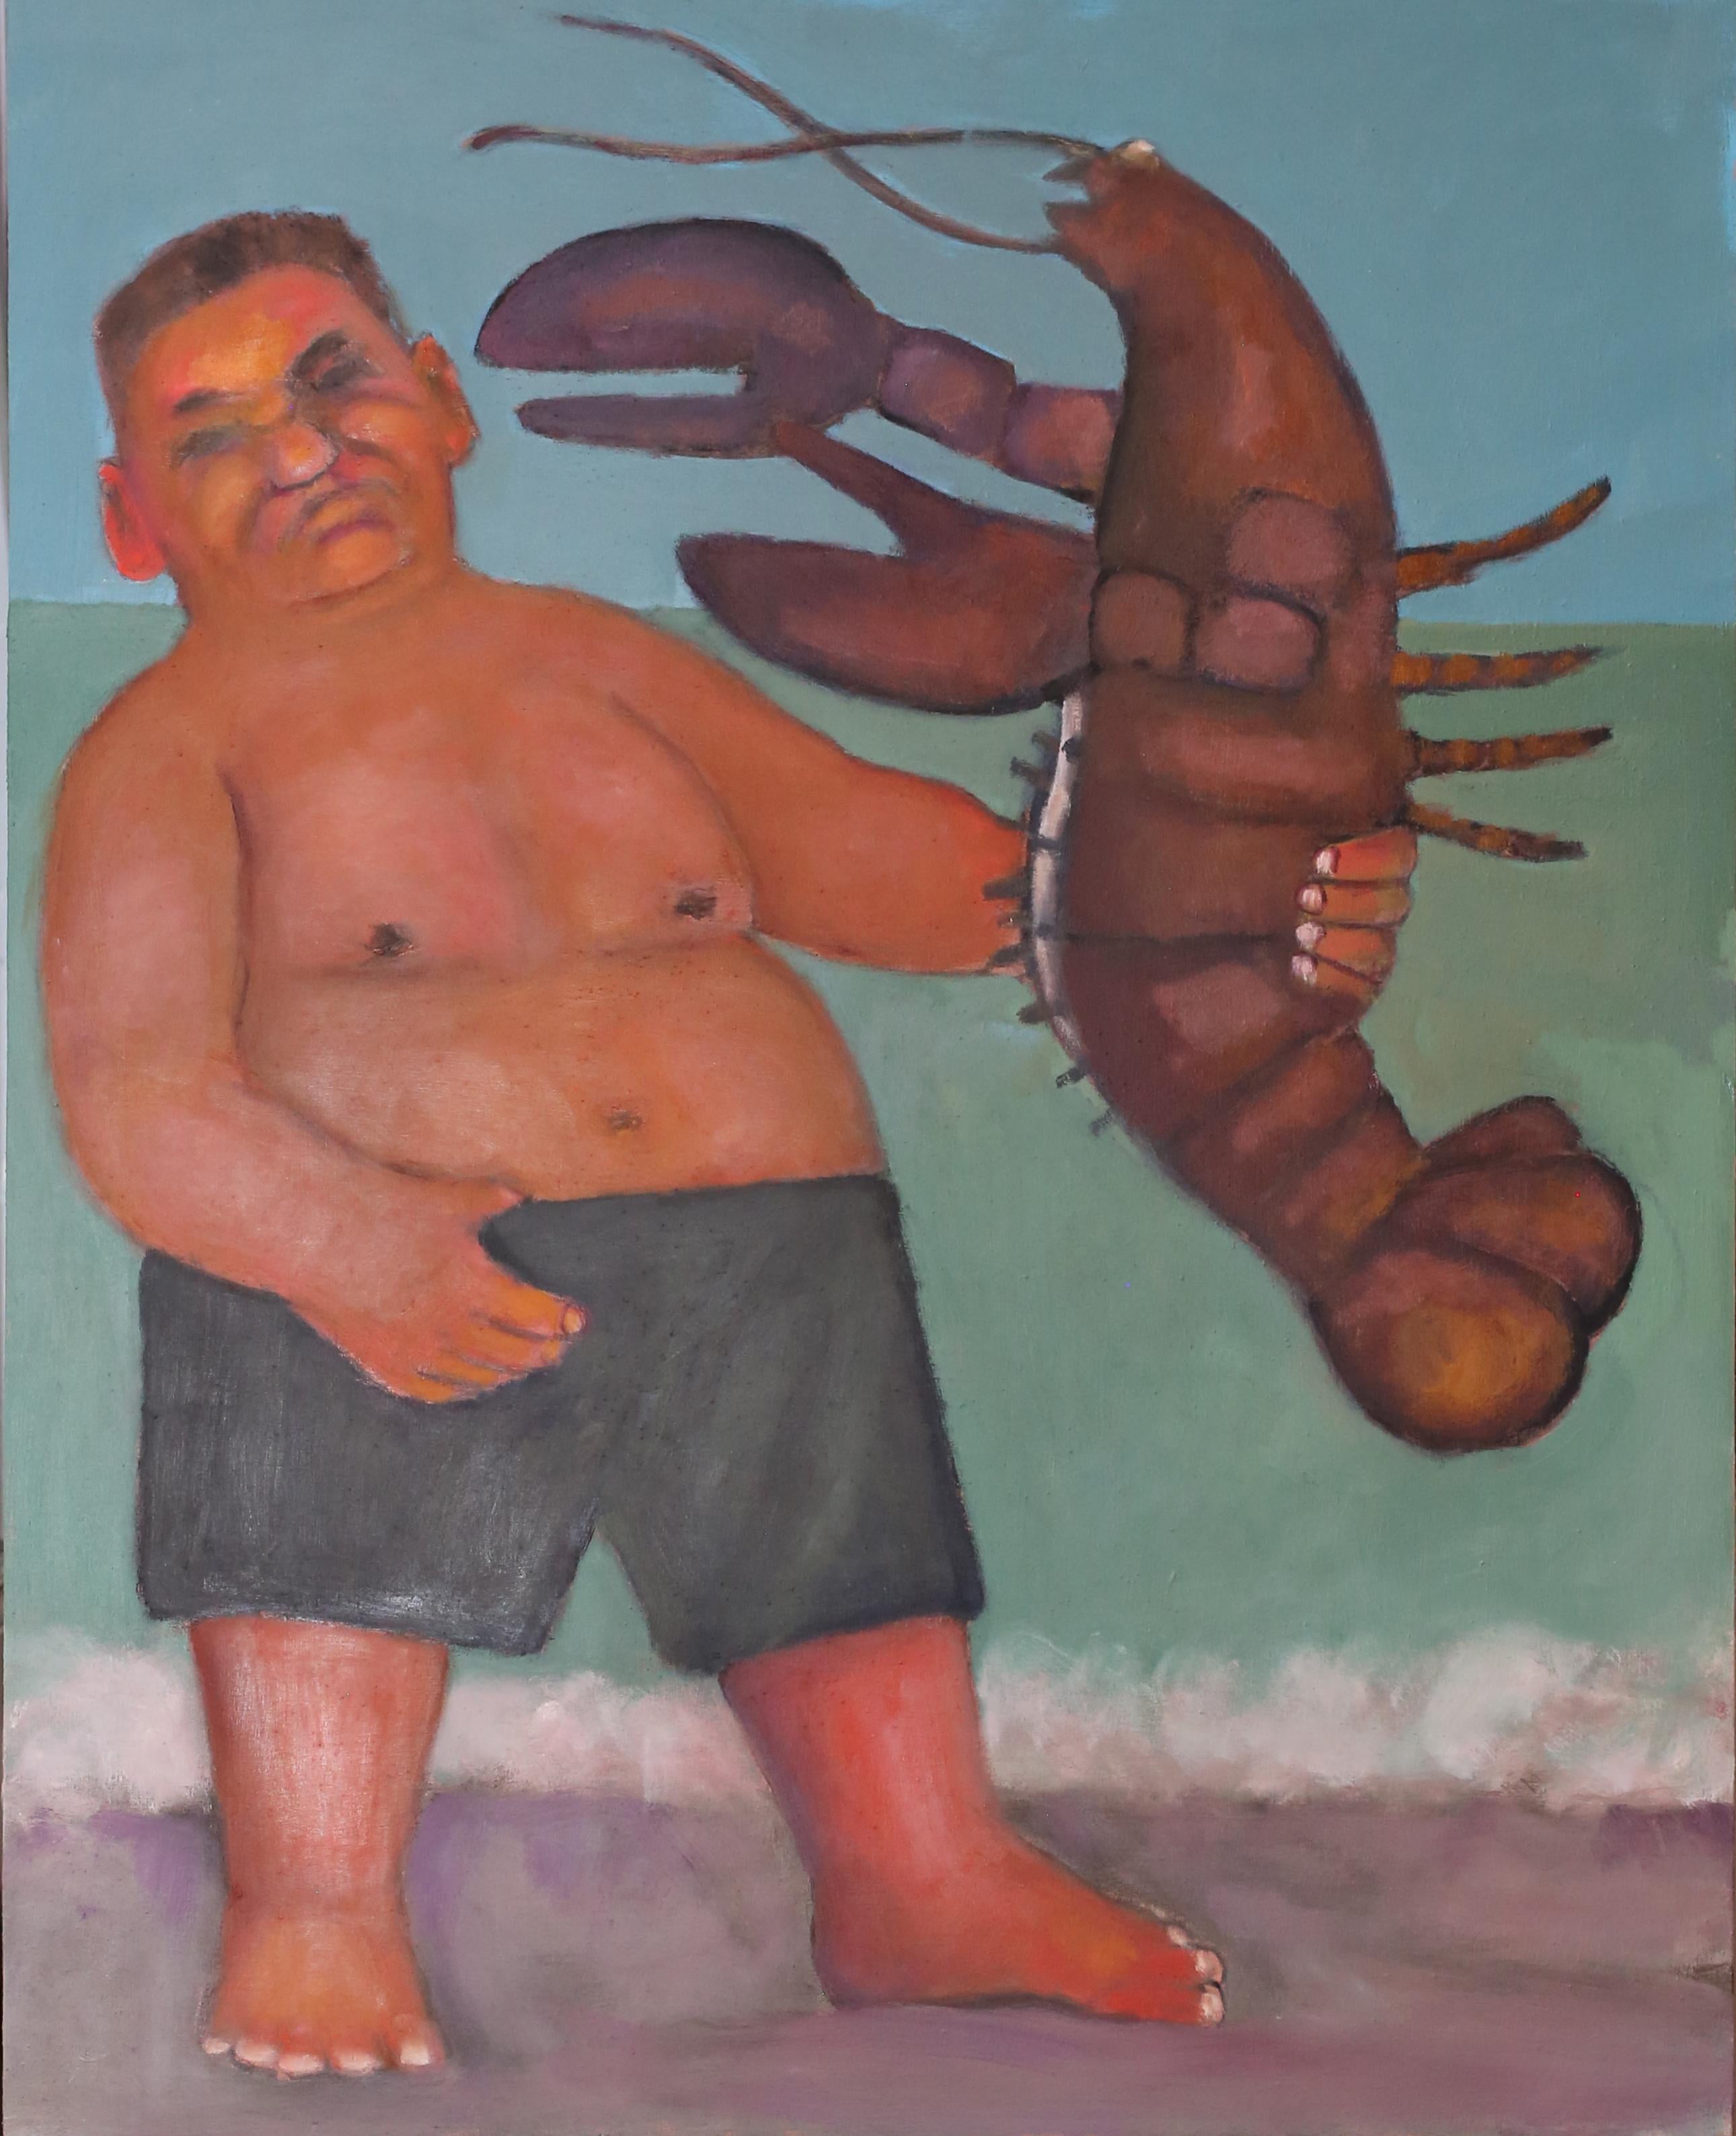 Le boxeur. Rencontre humoristique au bord de la mer avec un homard, couleurs douces et sourdes